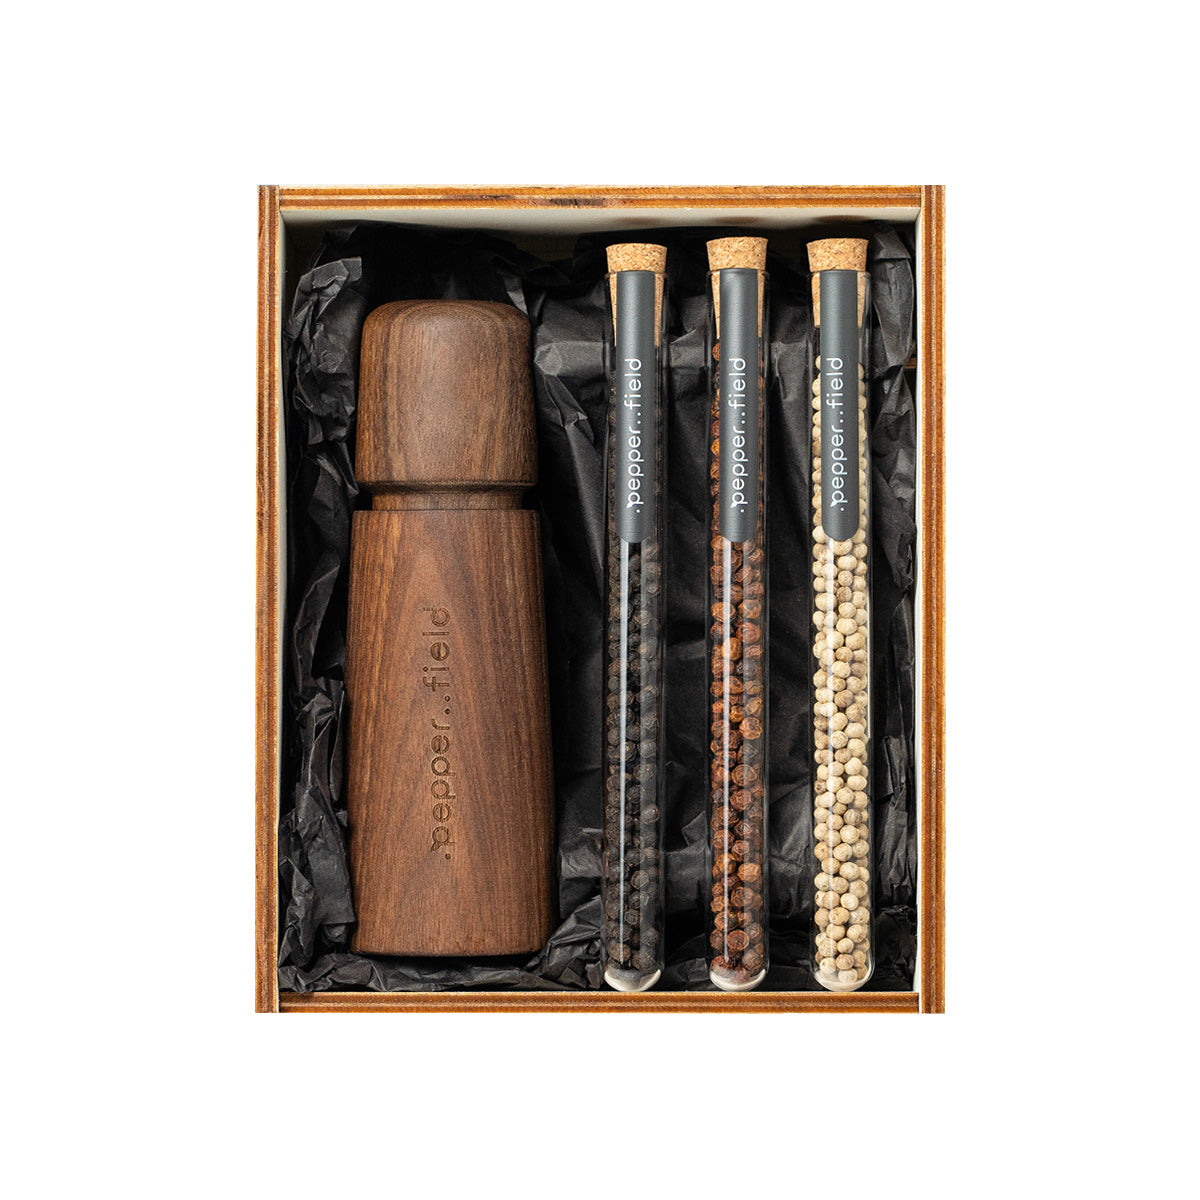 Skandinavisk kværn med sæt rør med Kampot-peber i gaveæske af træ (3x10g)